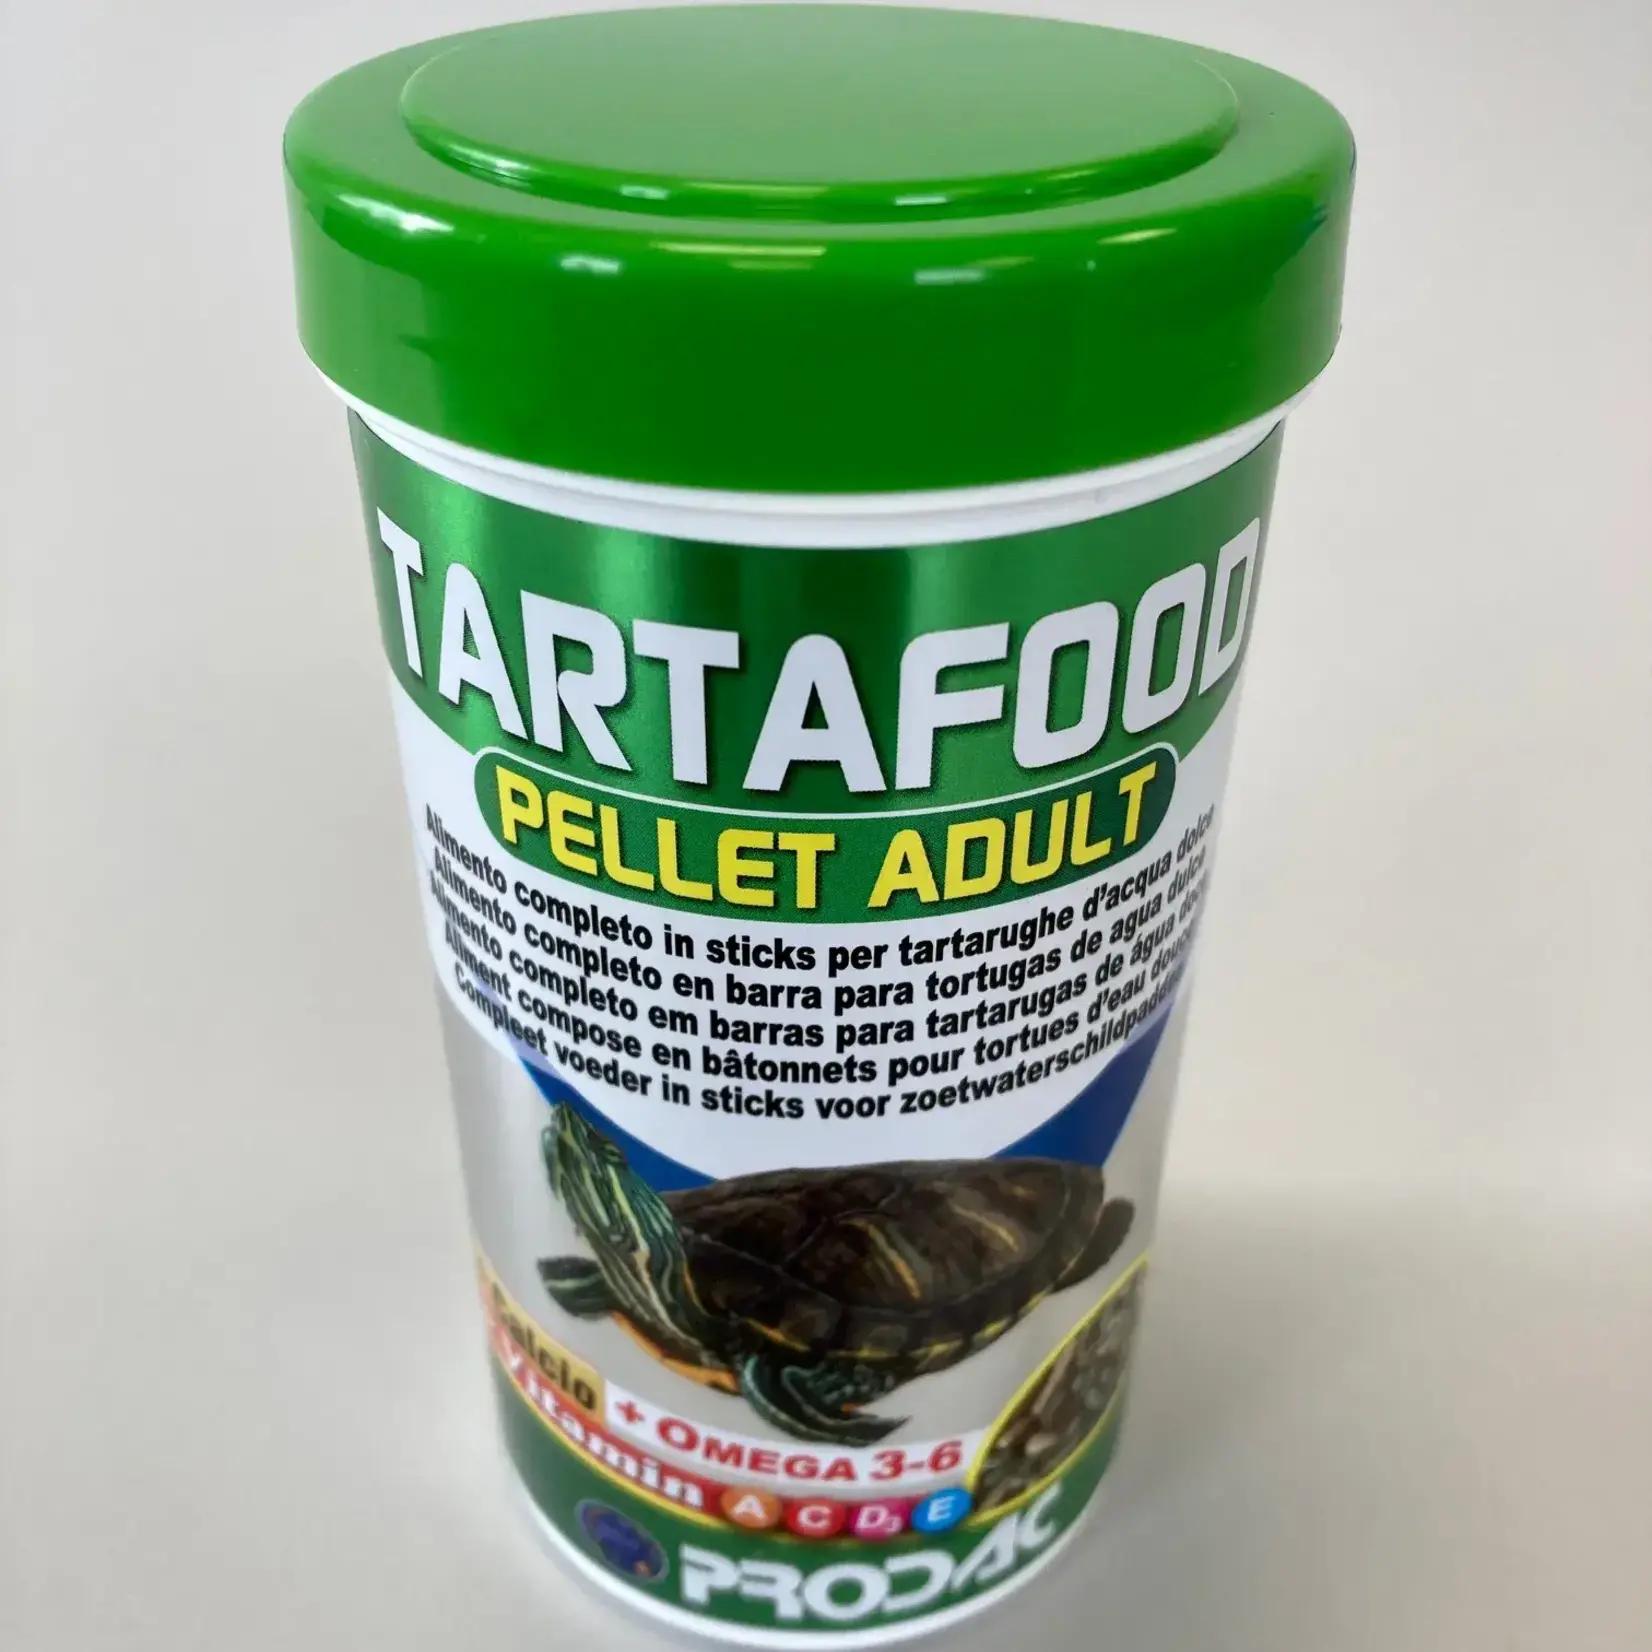 Tartafood pellet